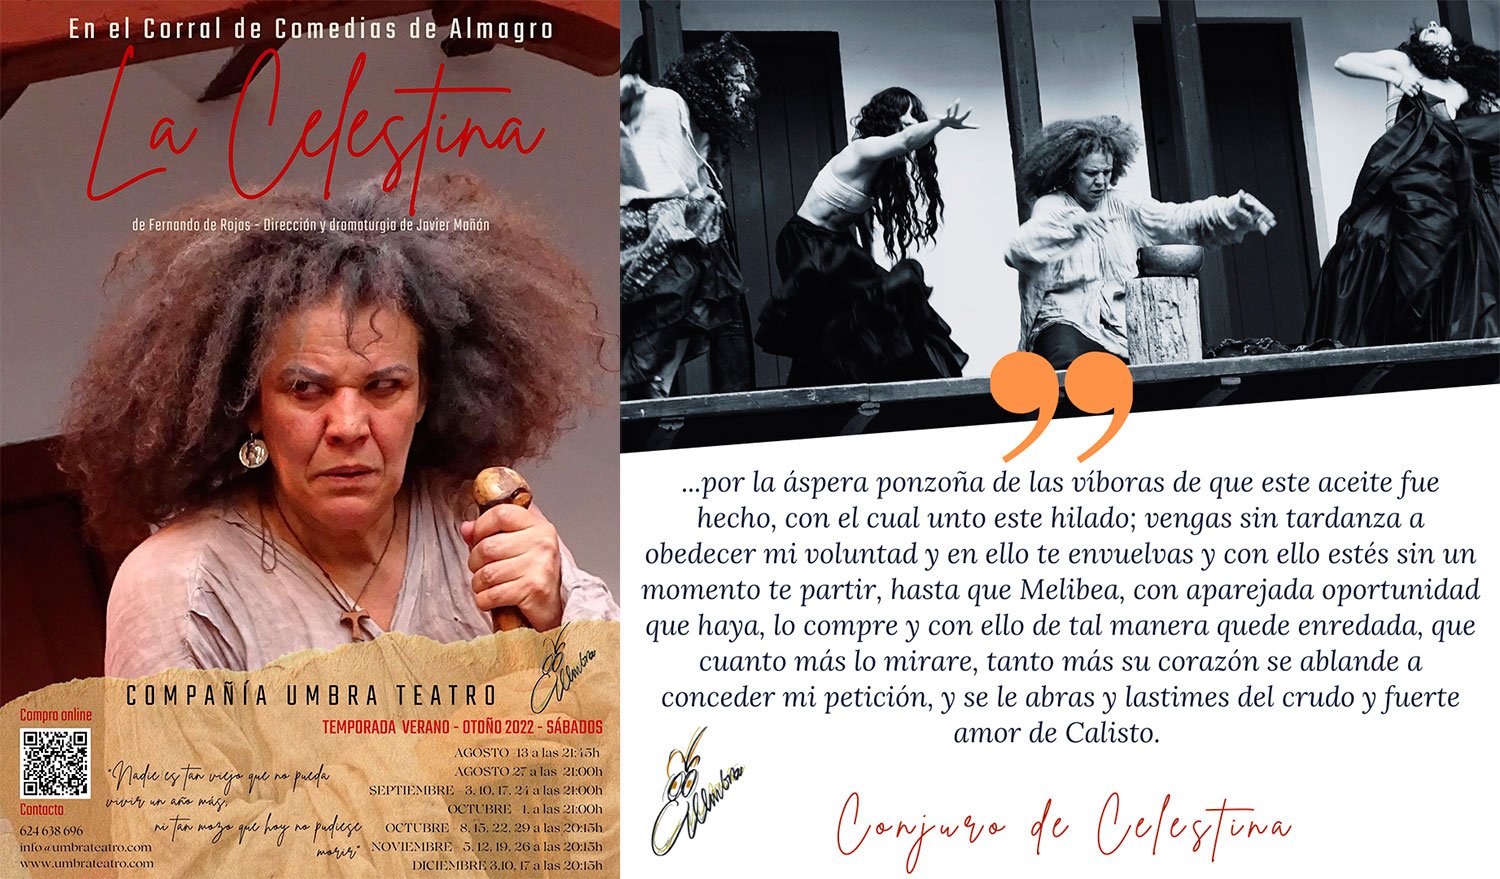 La celestina, obra de teatro en Almagro